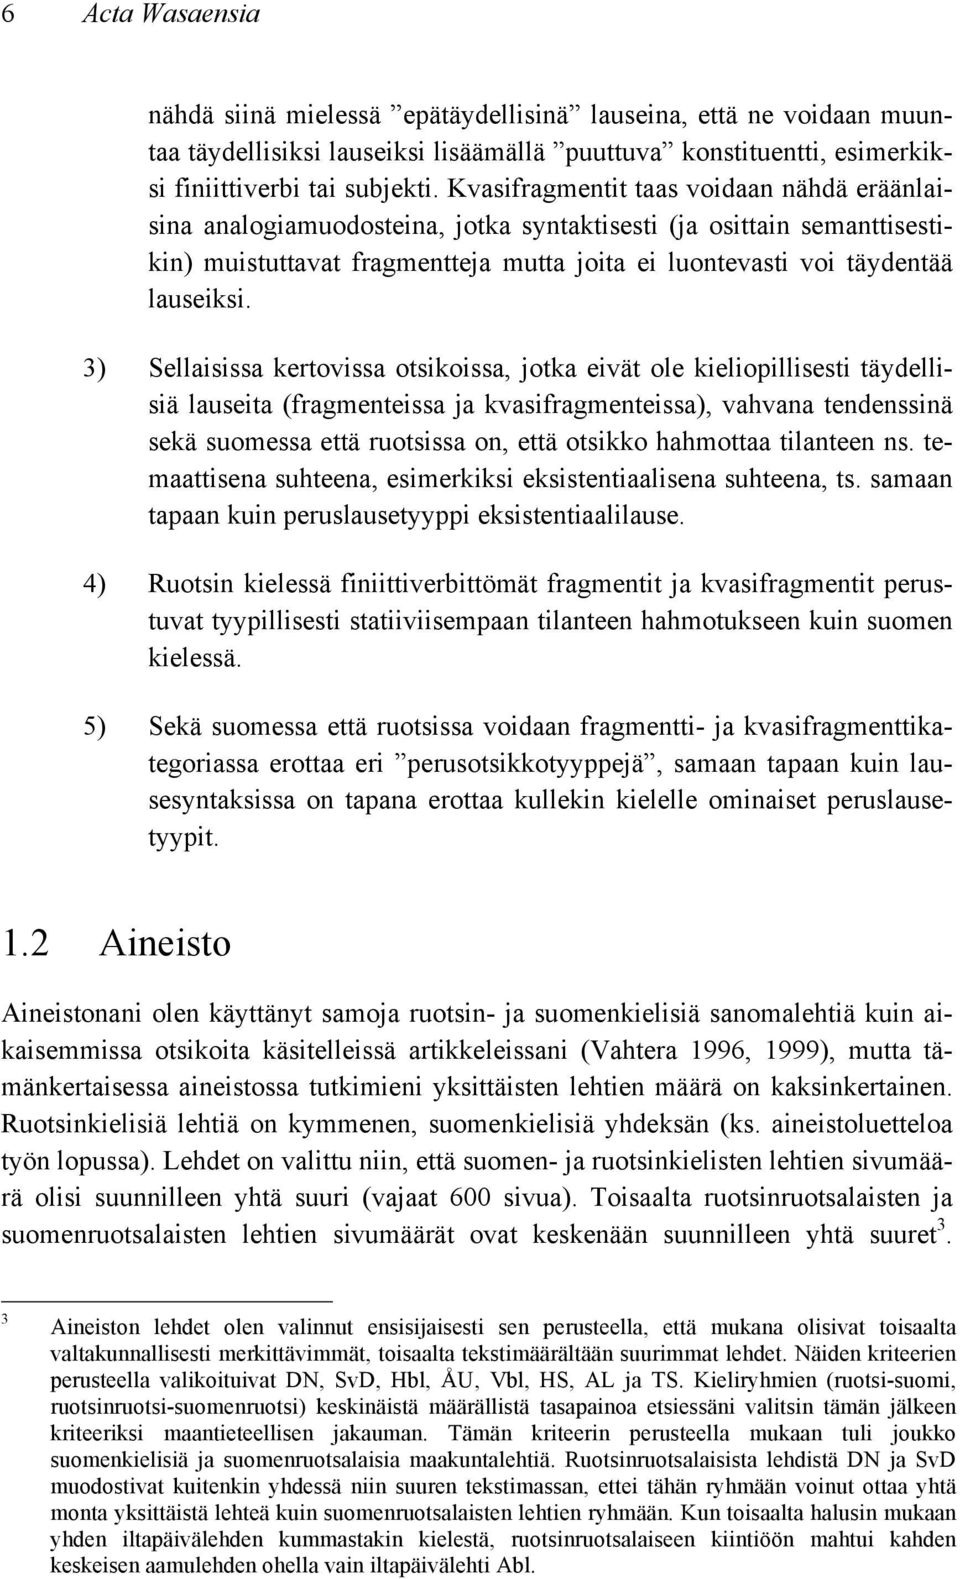 3) Sellaisissa kertovissa otsikoissa, jotka eivät ole kieliopillisesti täydellisiä lauseita (fragmenteissa ja kvasifragmenteissa), vahvana tendenssinä sekä suomessa että ruotsissa on, että otsikko